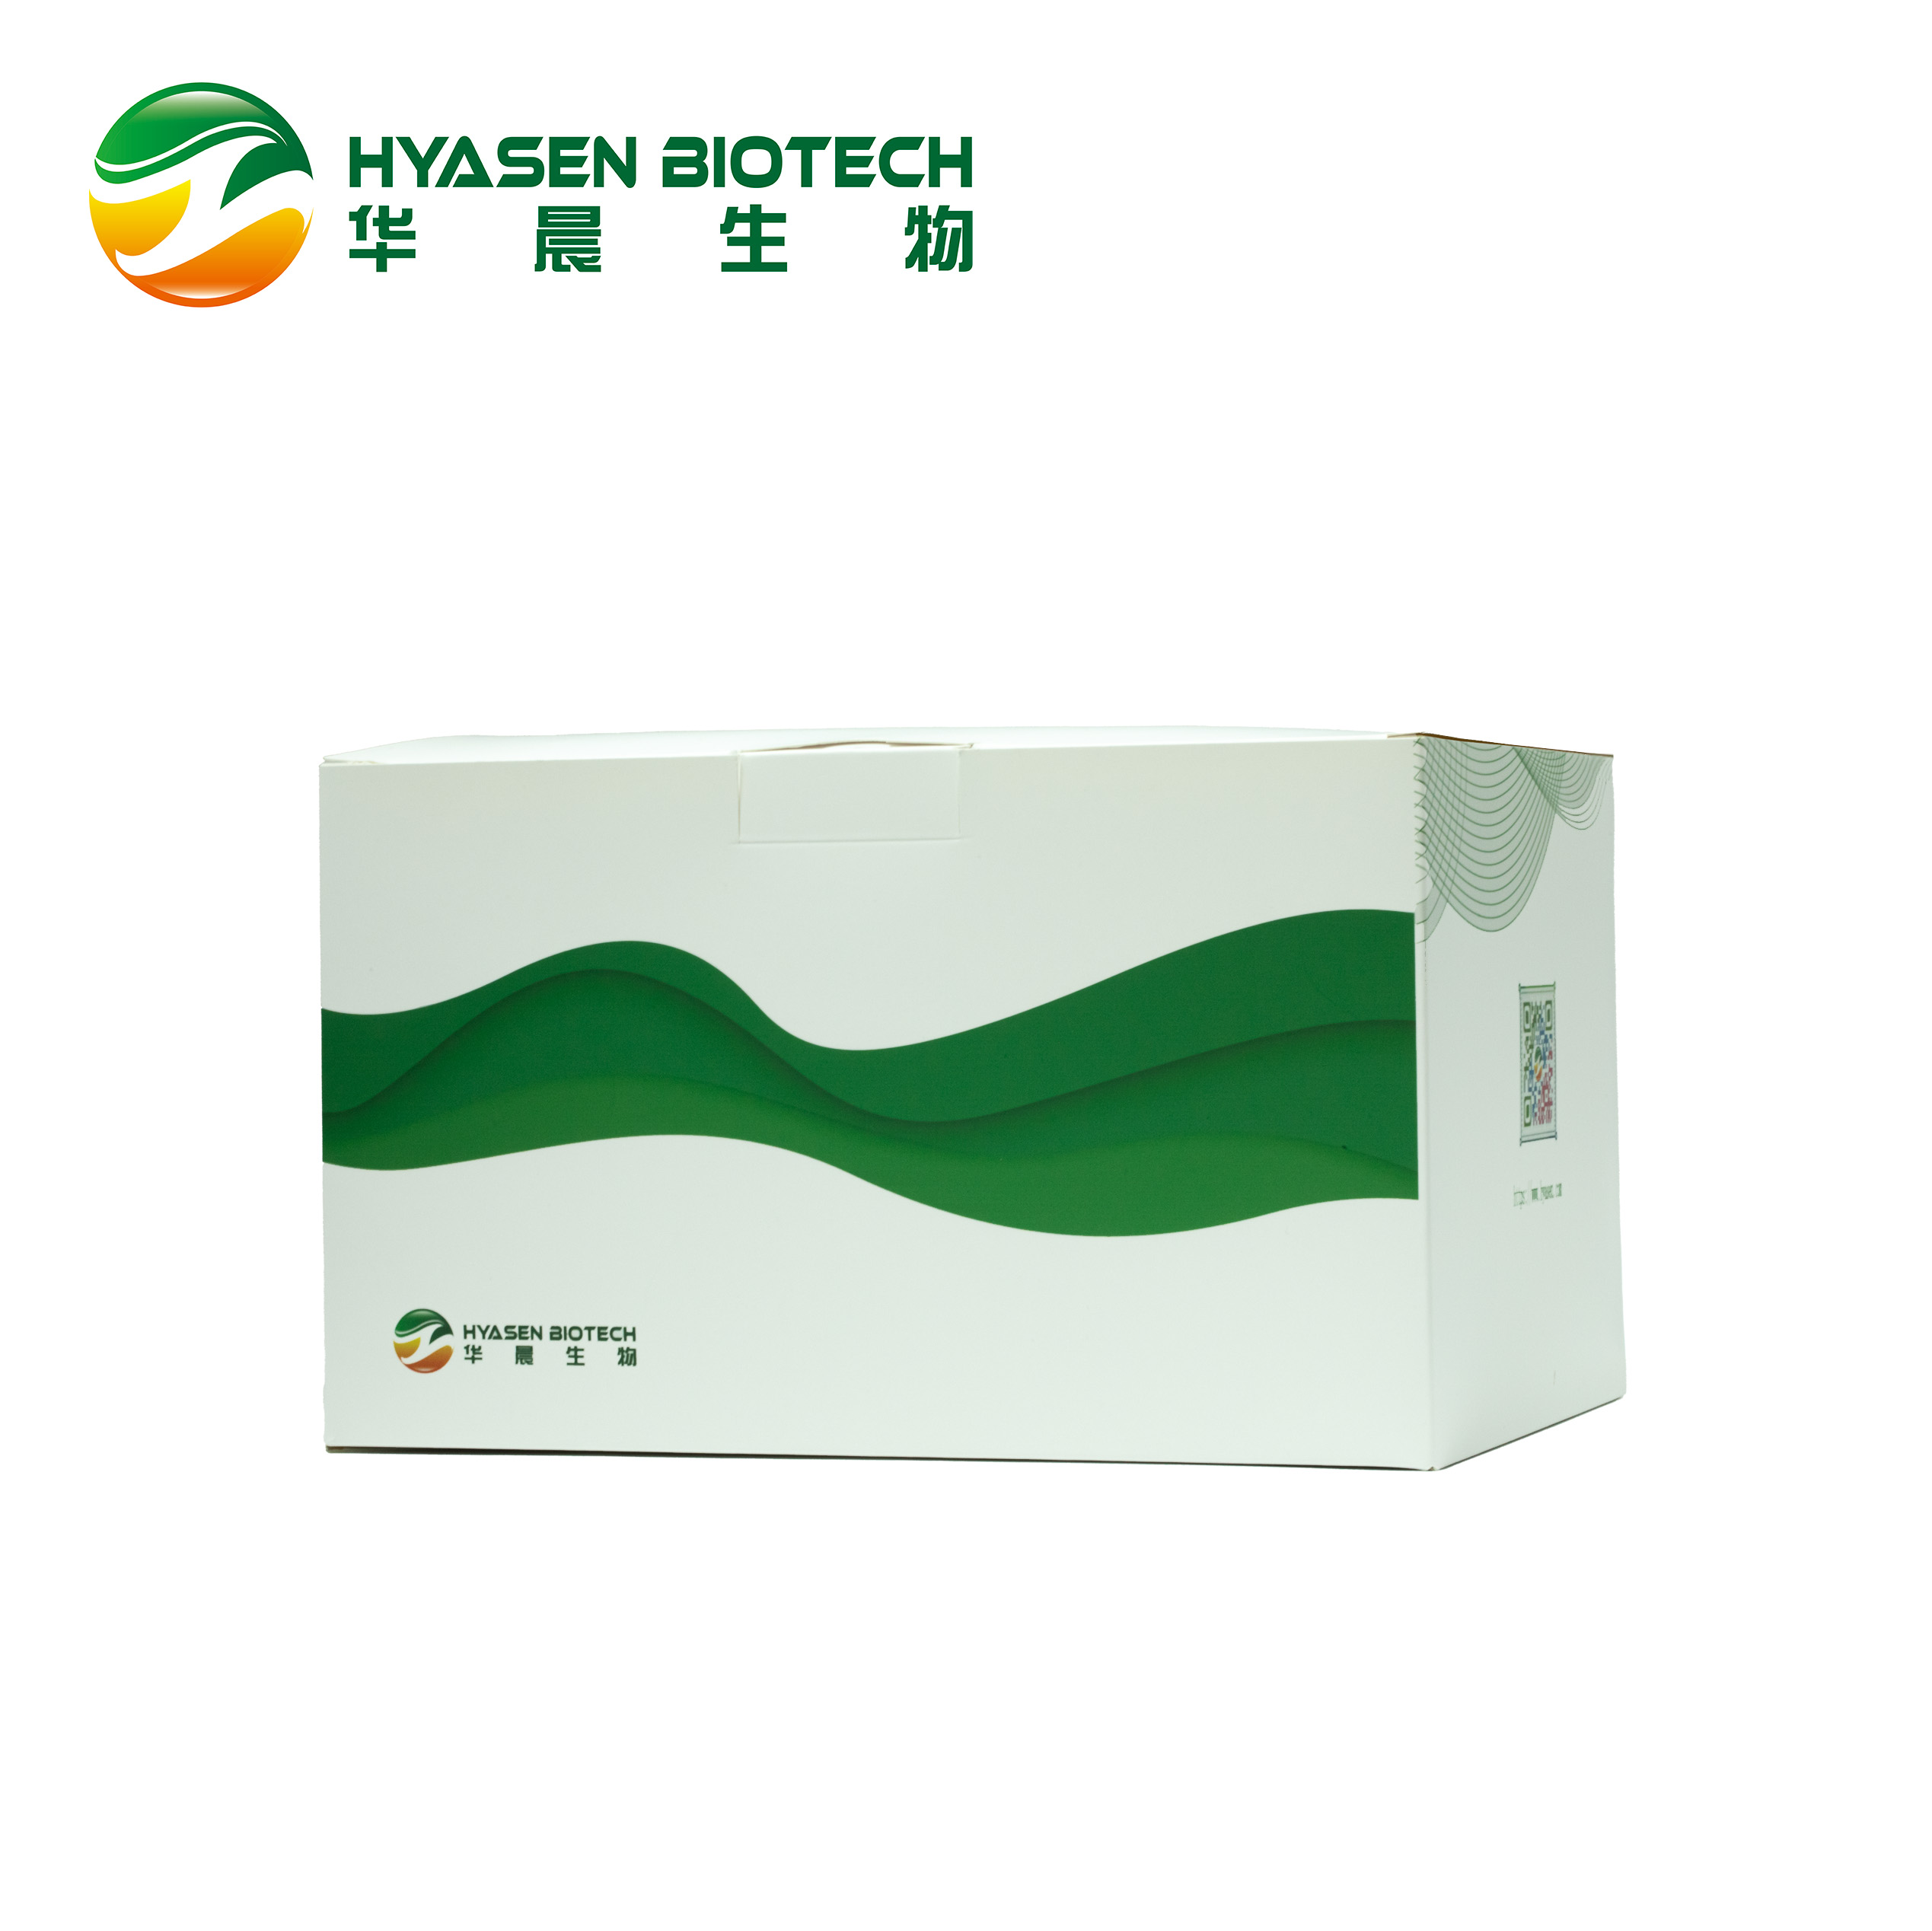 រូបភាពពិសេសនៃ DNA/RNA Extraction Kit HC1008B មេរោគ